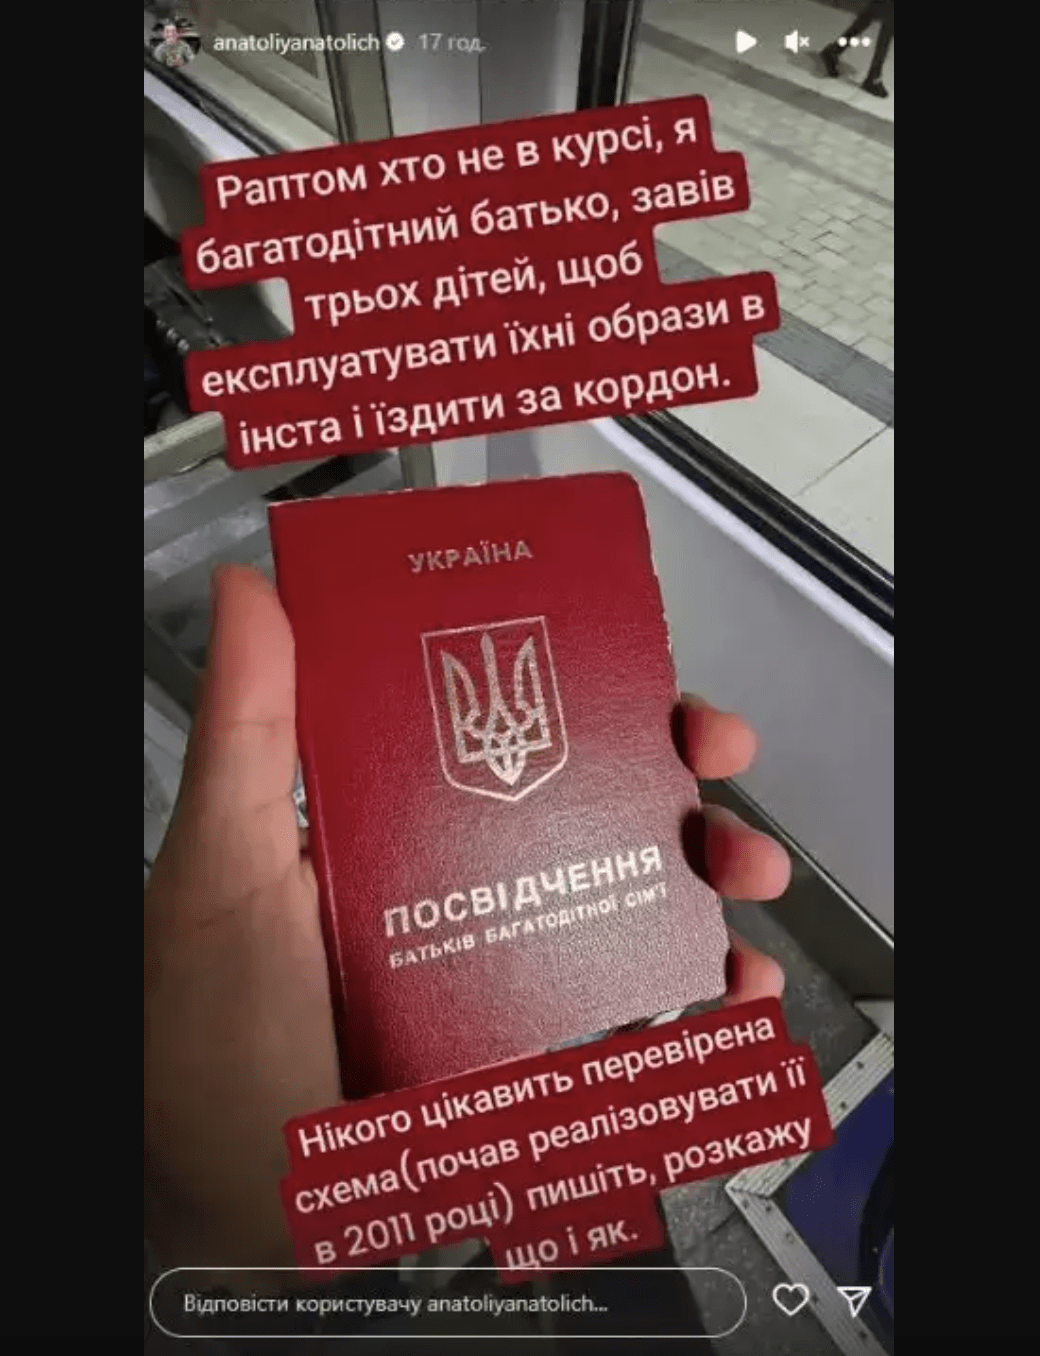 Анатолій Анатоліч прокоментував свій виїзд за кордон